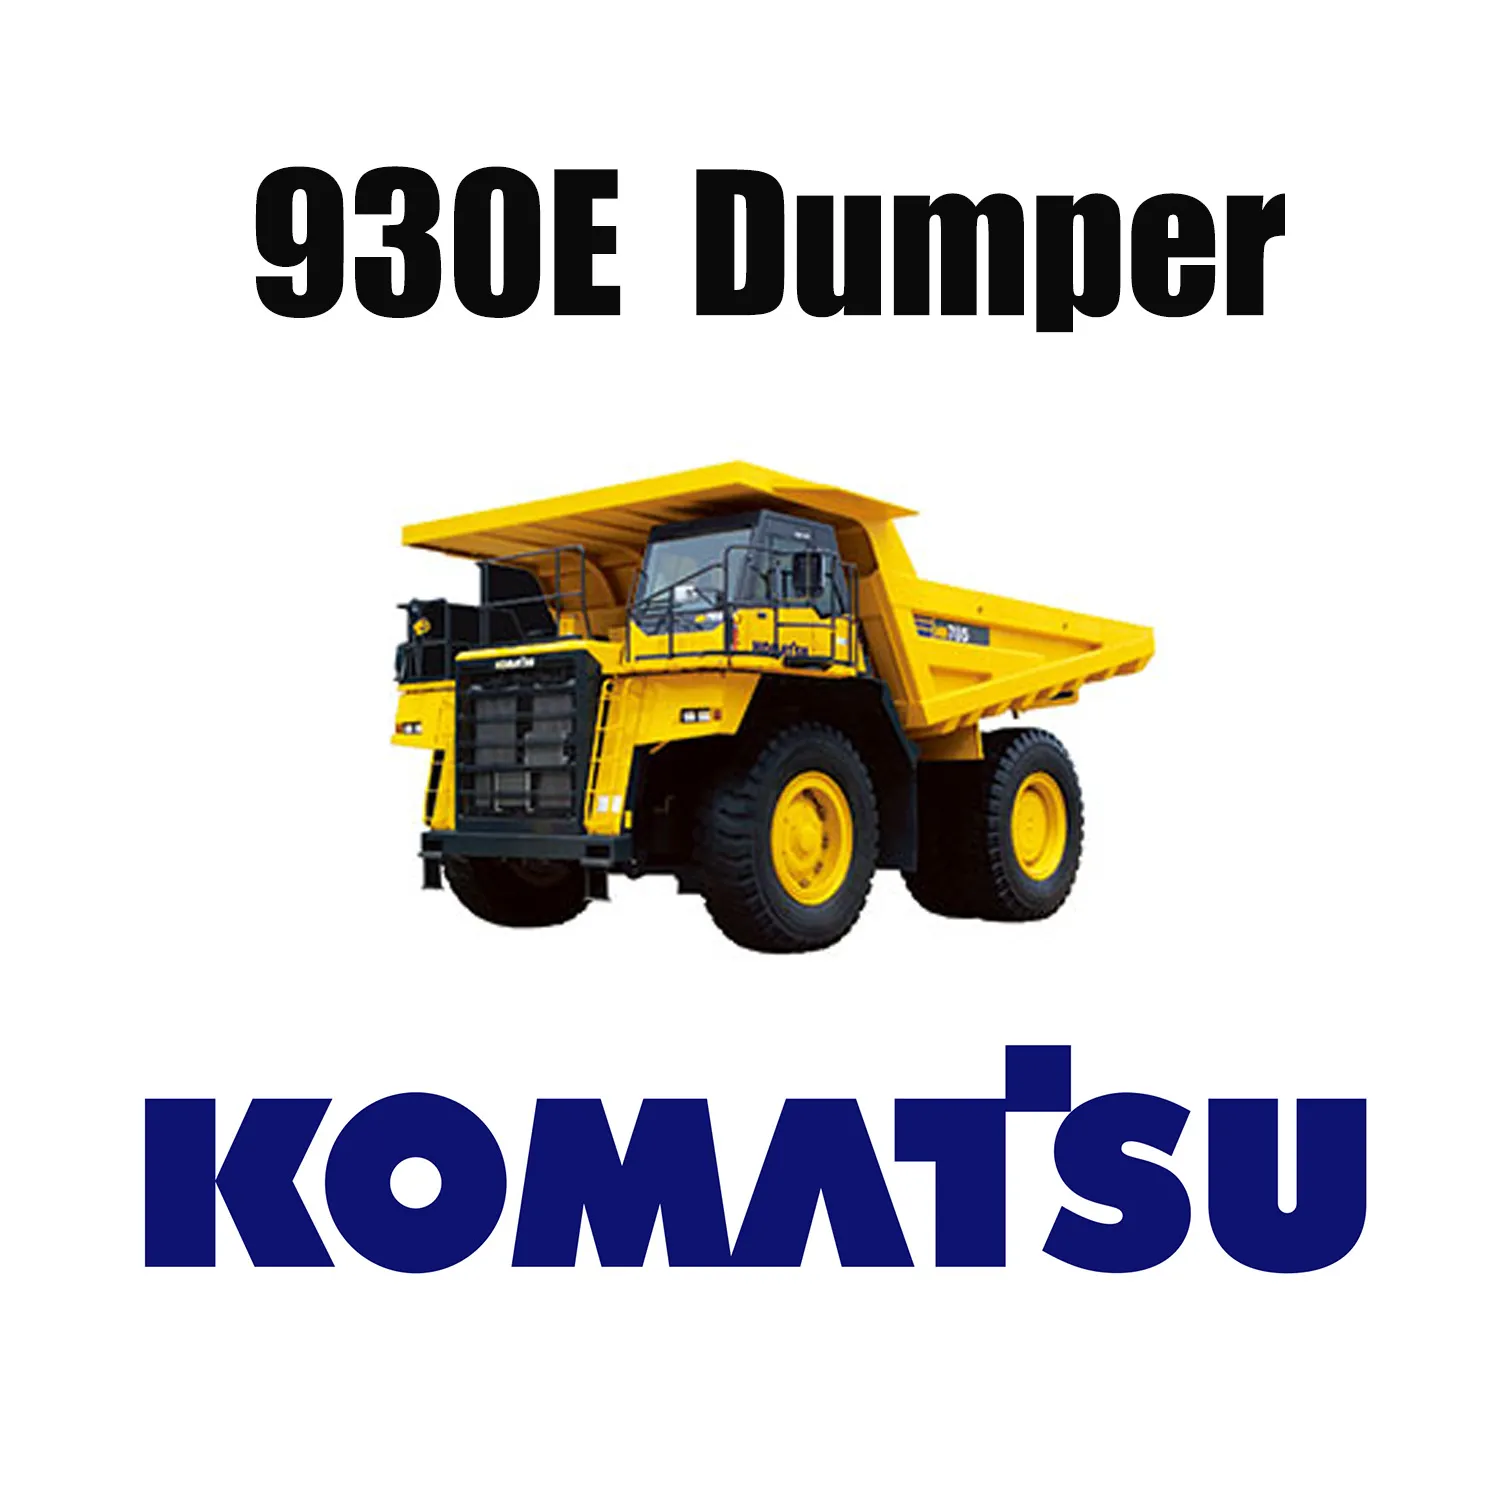 53/80R63 Opony do górnictwa nawierzchniowego stosowane w KOMATSU 930E